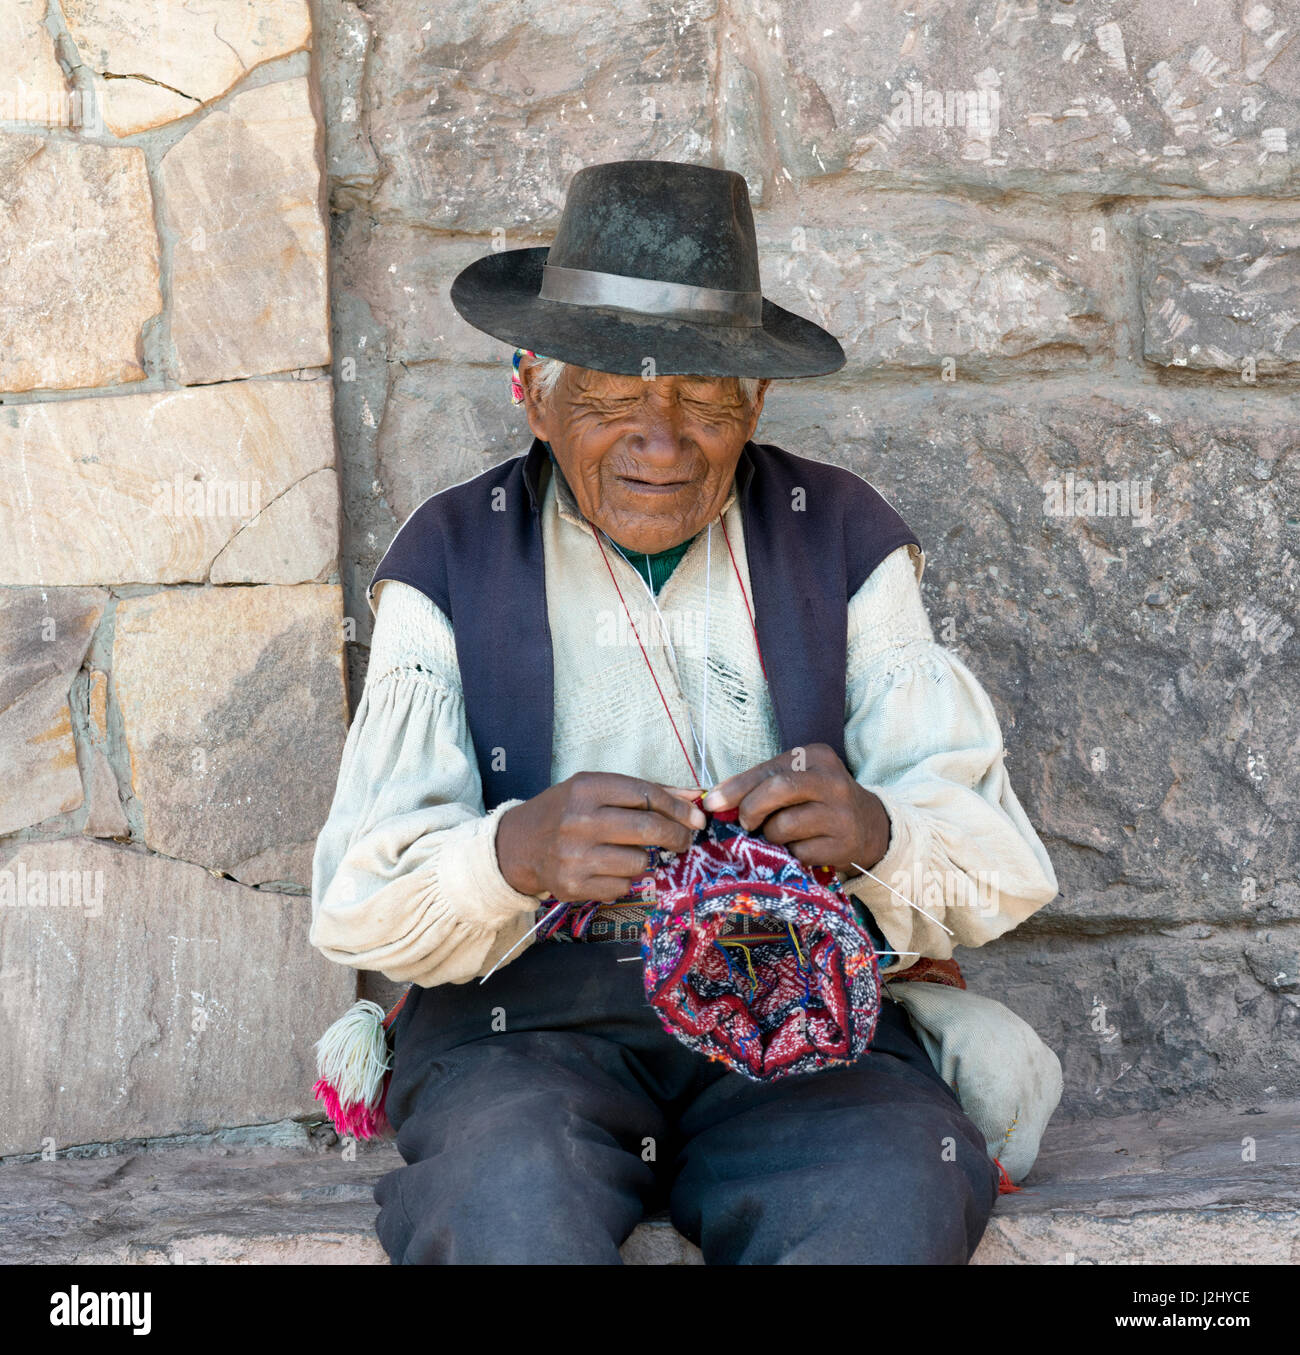 Peruanische native Mann eine Mütze stricken. 17. Oktober 2012 - Insel  Taquile, Titicacasee, Peru Stockfotografie - Alamy